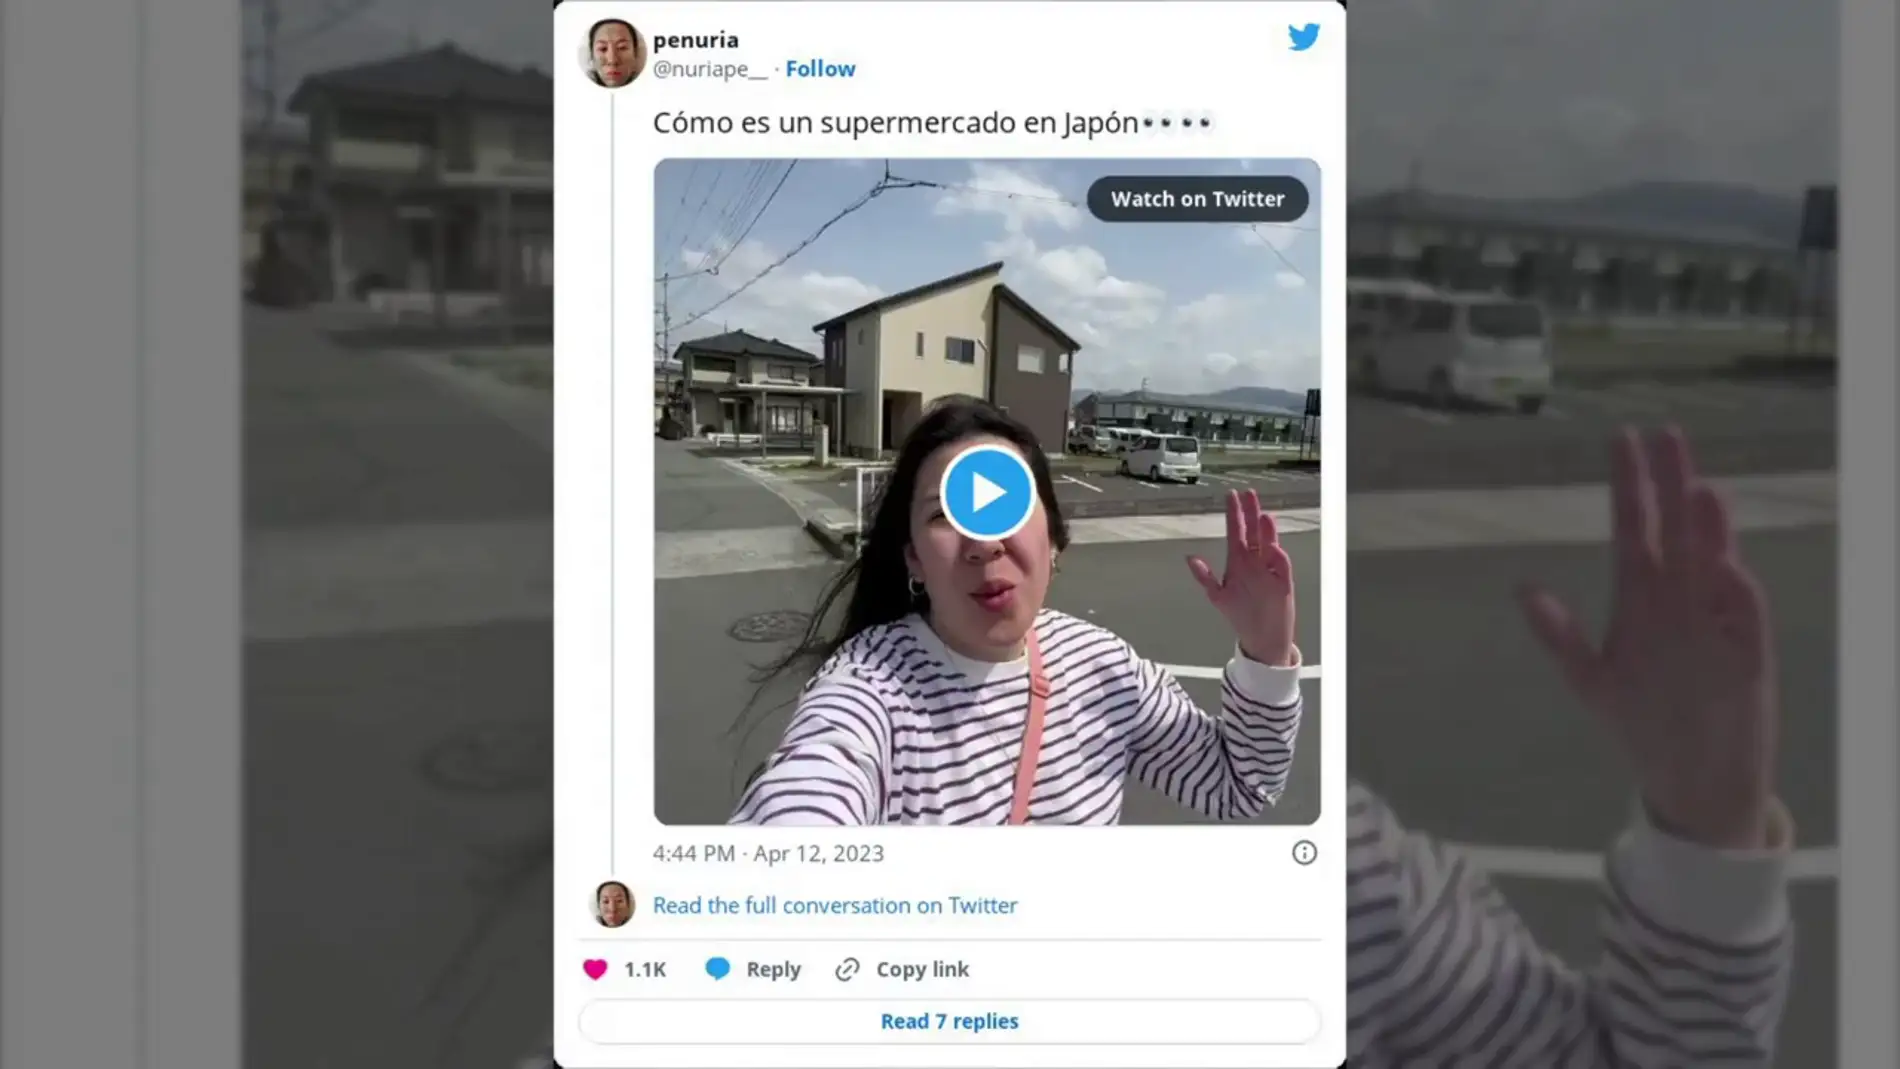 Una joven vuelve a Japón 5 años después para ver a su familia y muestra en Twitter como es allí un supermercado